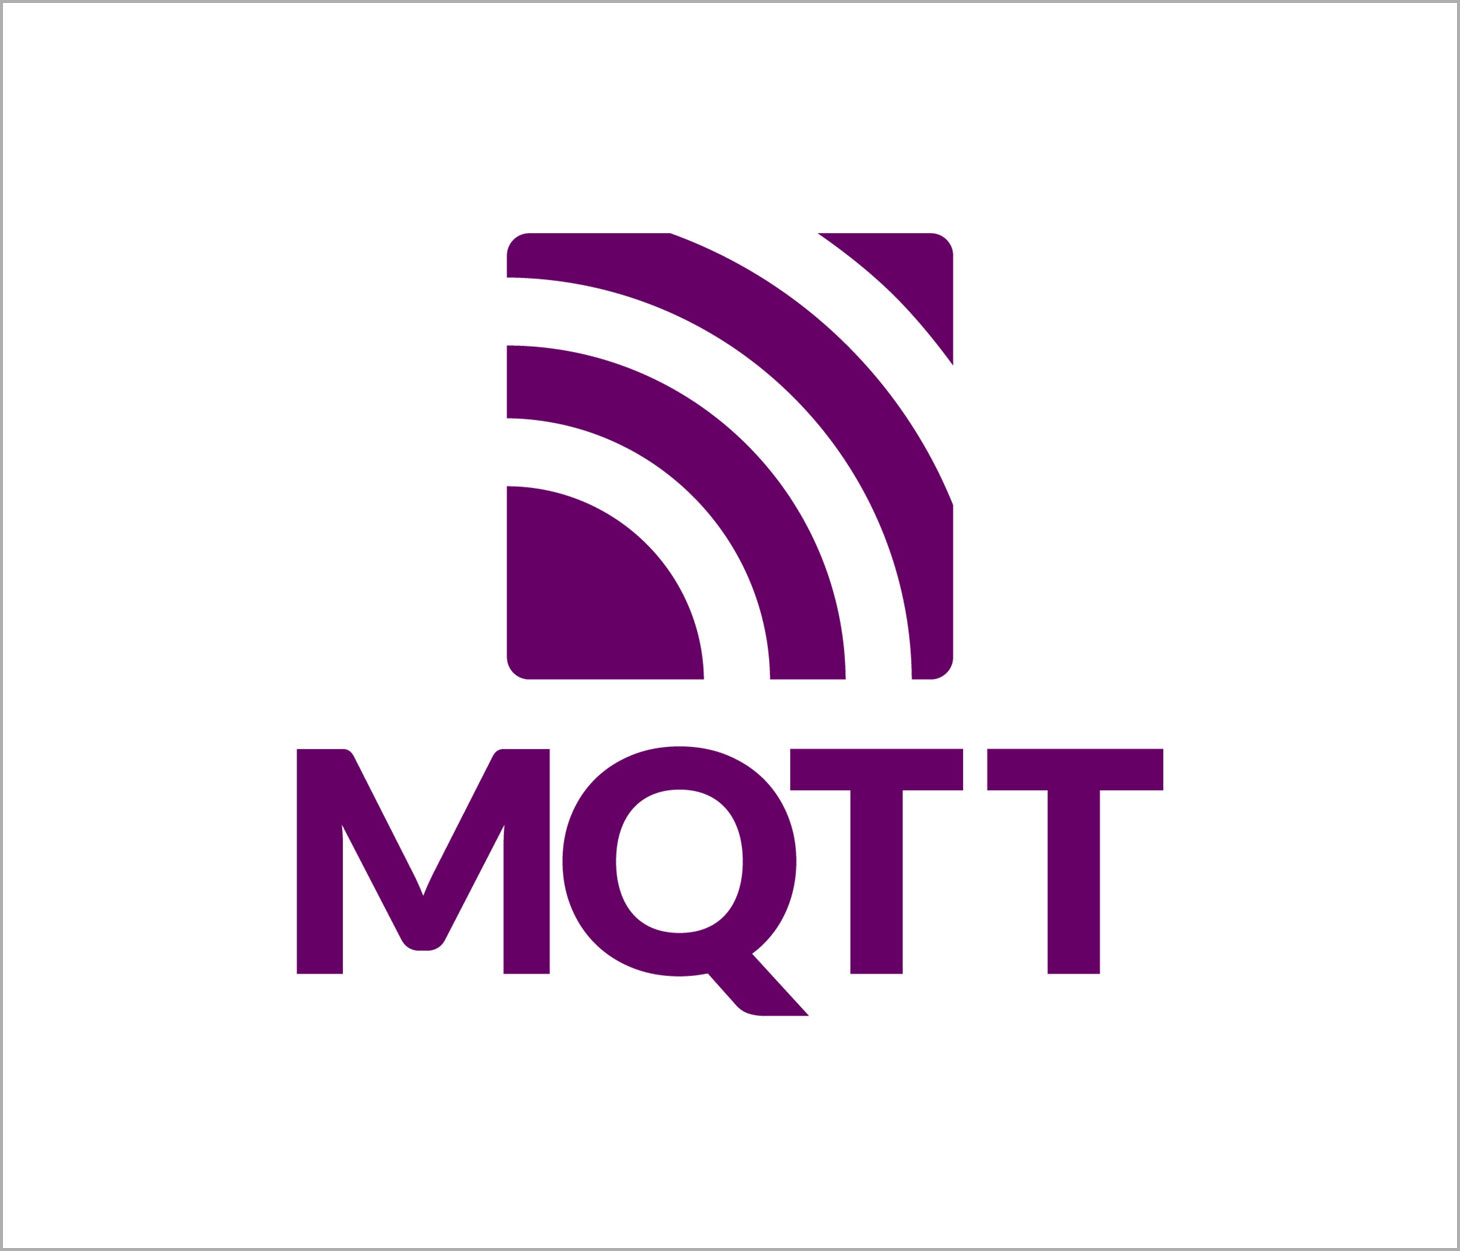 MQTT Specification